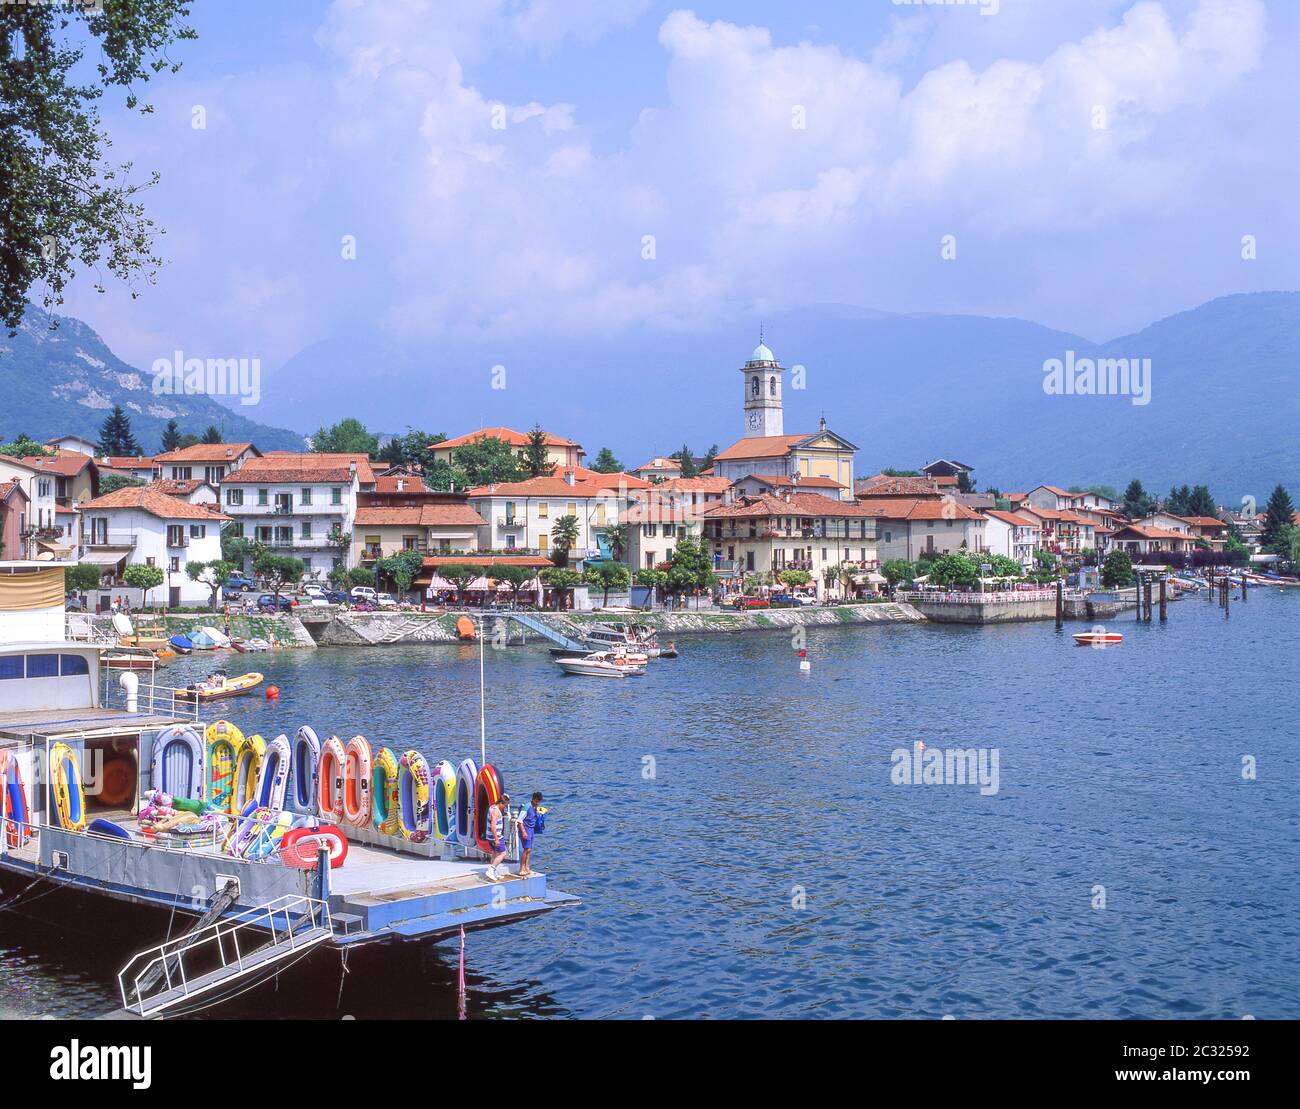 Il Feriolo Dorf am Ufer des Lago Maggiore, Provinz Verbano-Cusio-Ossola, Piemonte (Piemont) Region, Italien Stockfoto